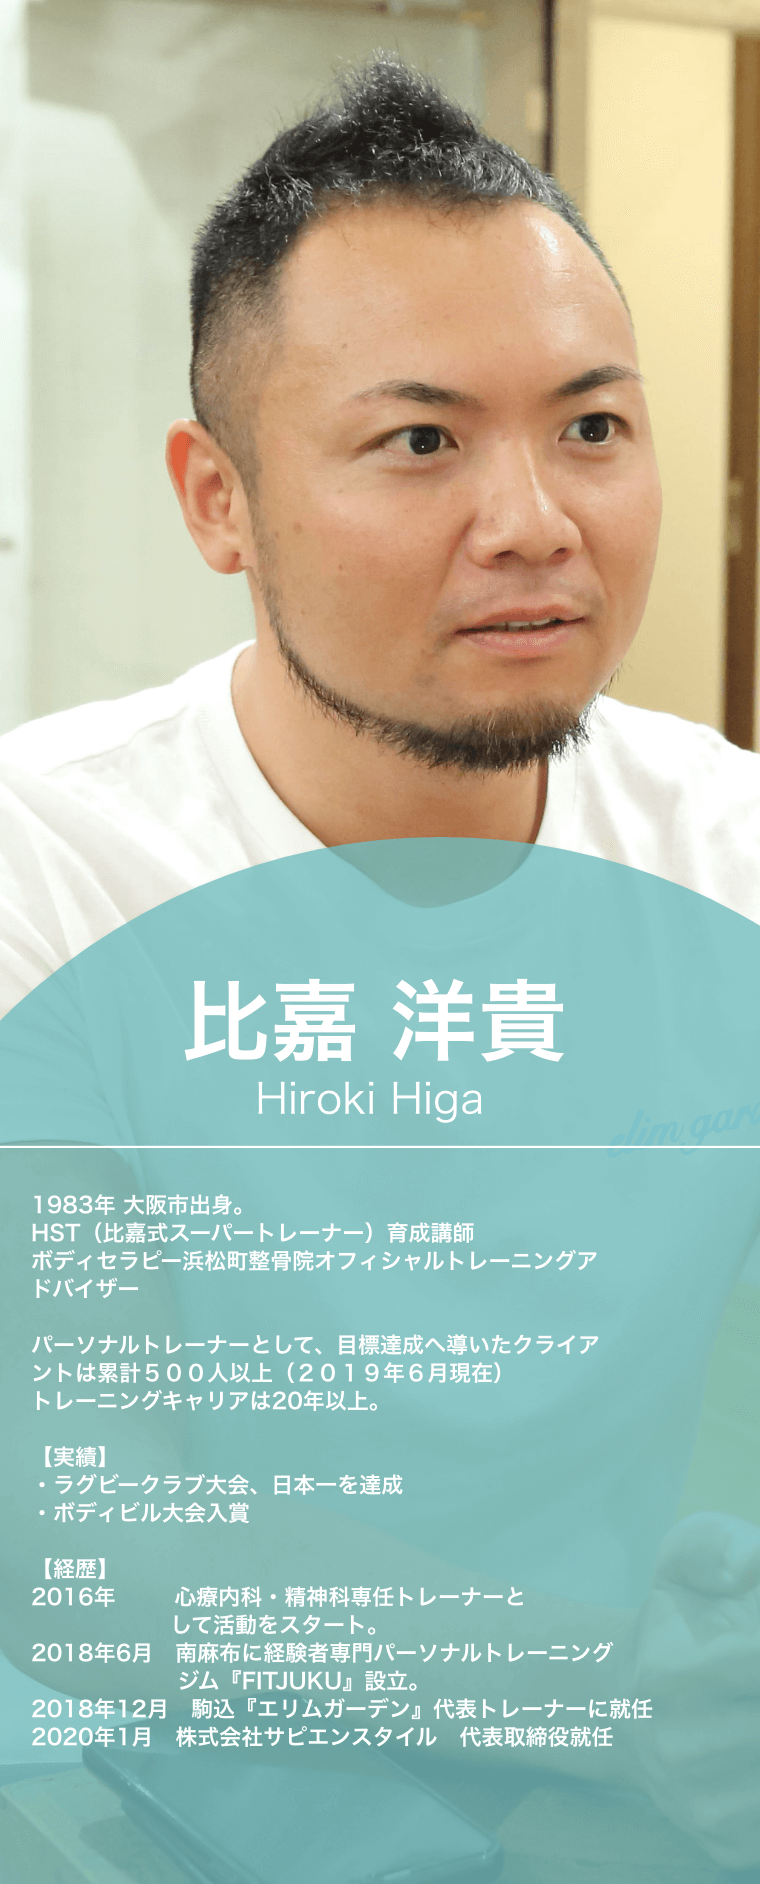 比嘉洋貴,Hiroki Higa,1983年,大阪市出身。,HST（比嘉式スーパートレーナー）育成講師,ボディセラピー浜松町整骨院オフィシャルトレーニングアドバイザー,パーソナルトレーナーとして、目標達成へ導いたクライアントは累計５００人以上（２０１９年６月現在）,トレーニングキャリアは20年以上。実績,ラグビークラブ大会、日本一を達成,ボディビル大会入賞,お客様定着率93.8%,経歴,2016年,世界初の心療内科・精神科専任トレーナーとして活動をスタート。2018年6月　南麻布に経験者専門パーソナルトレーニングジム『FITJUKU』設立。2018年12月,駒込『エリムガーデン』代表トレーナーに就任